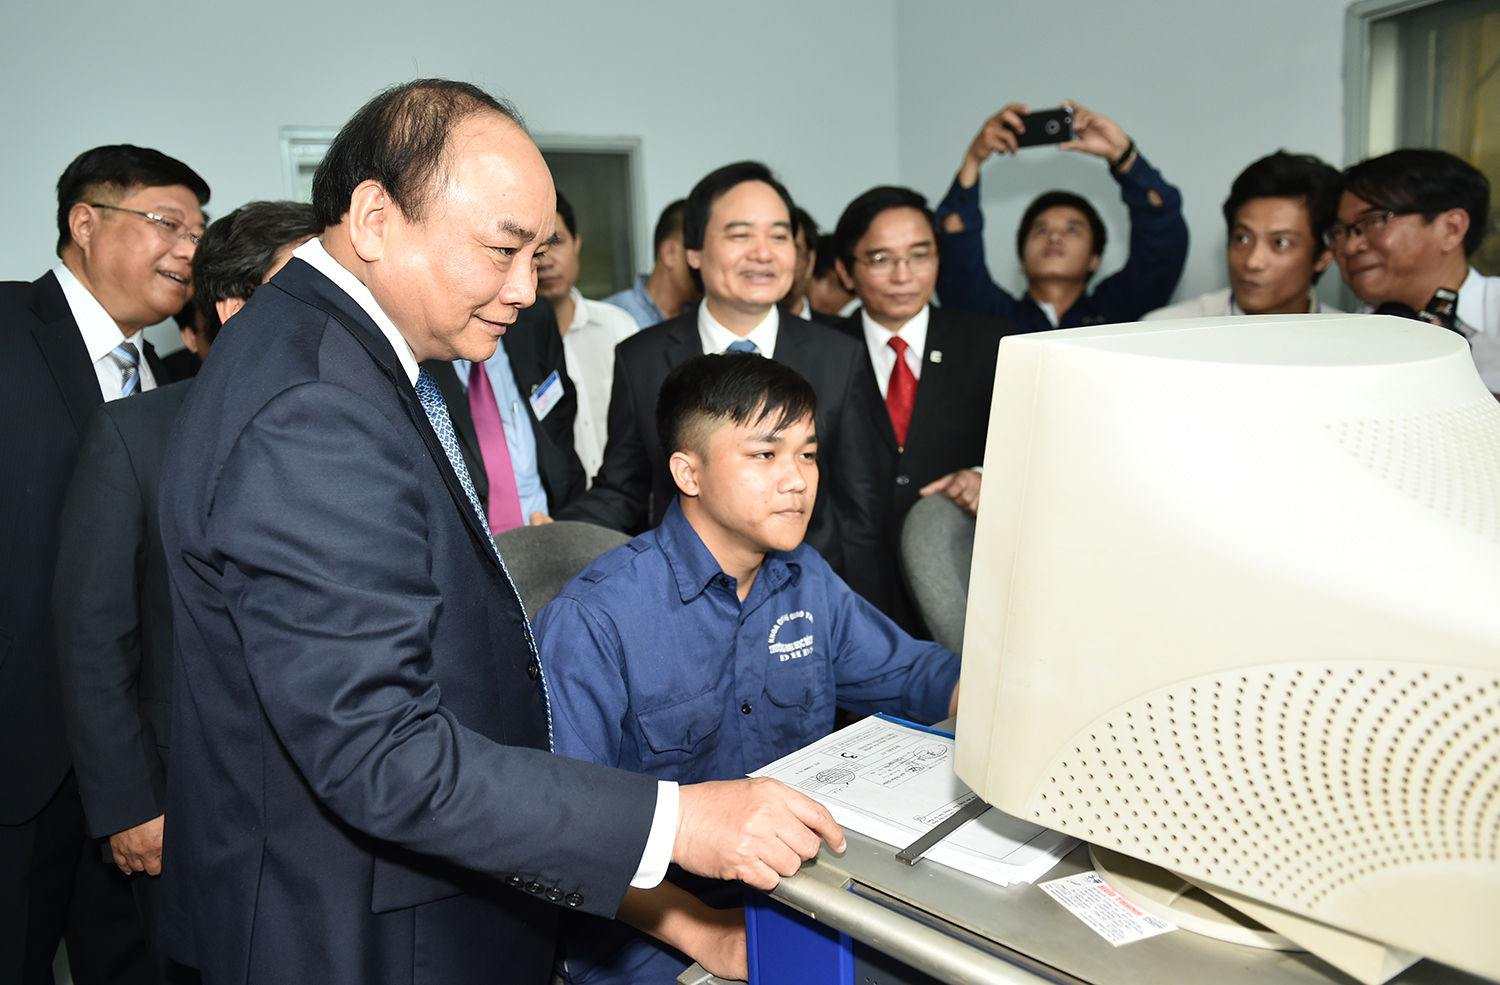 Thủ tướng thăm khu thực hành cơ khí của Đại học Bách khoa thuộc Đại học Đà Nẵng. Ảnh: VGP